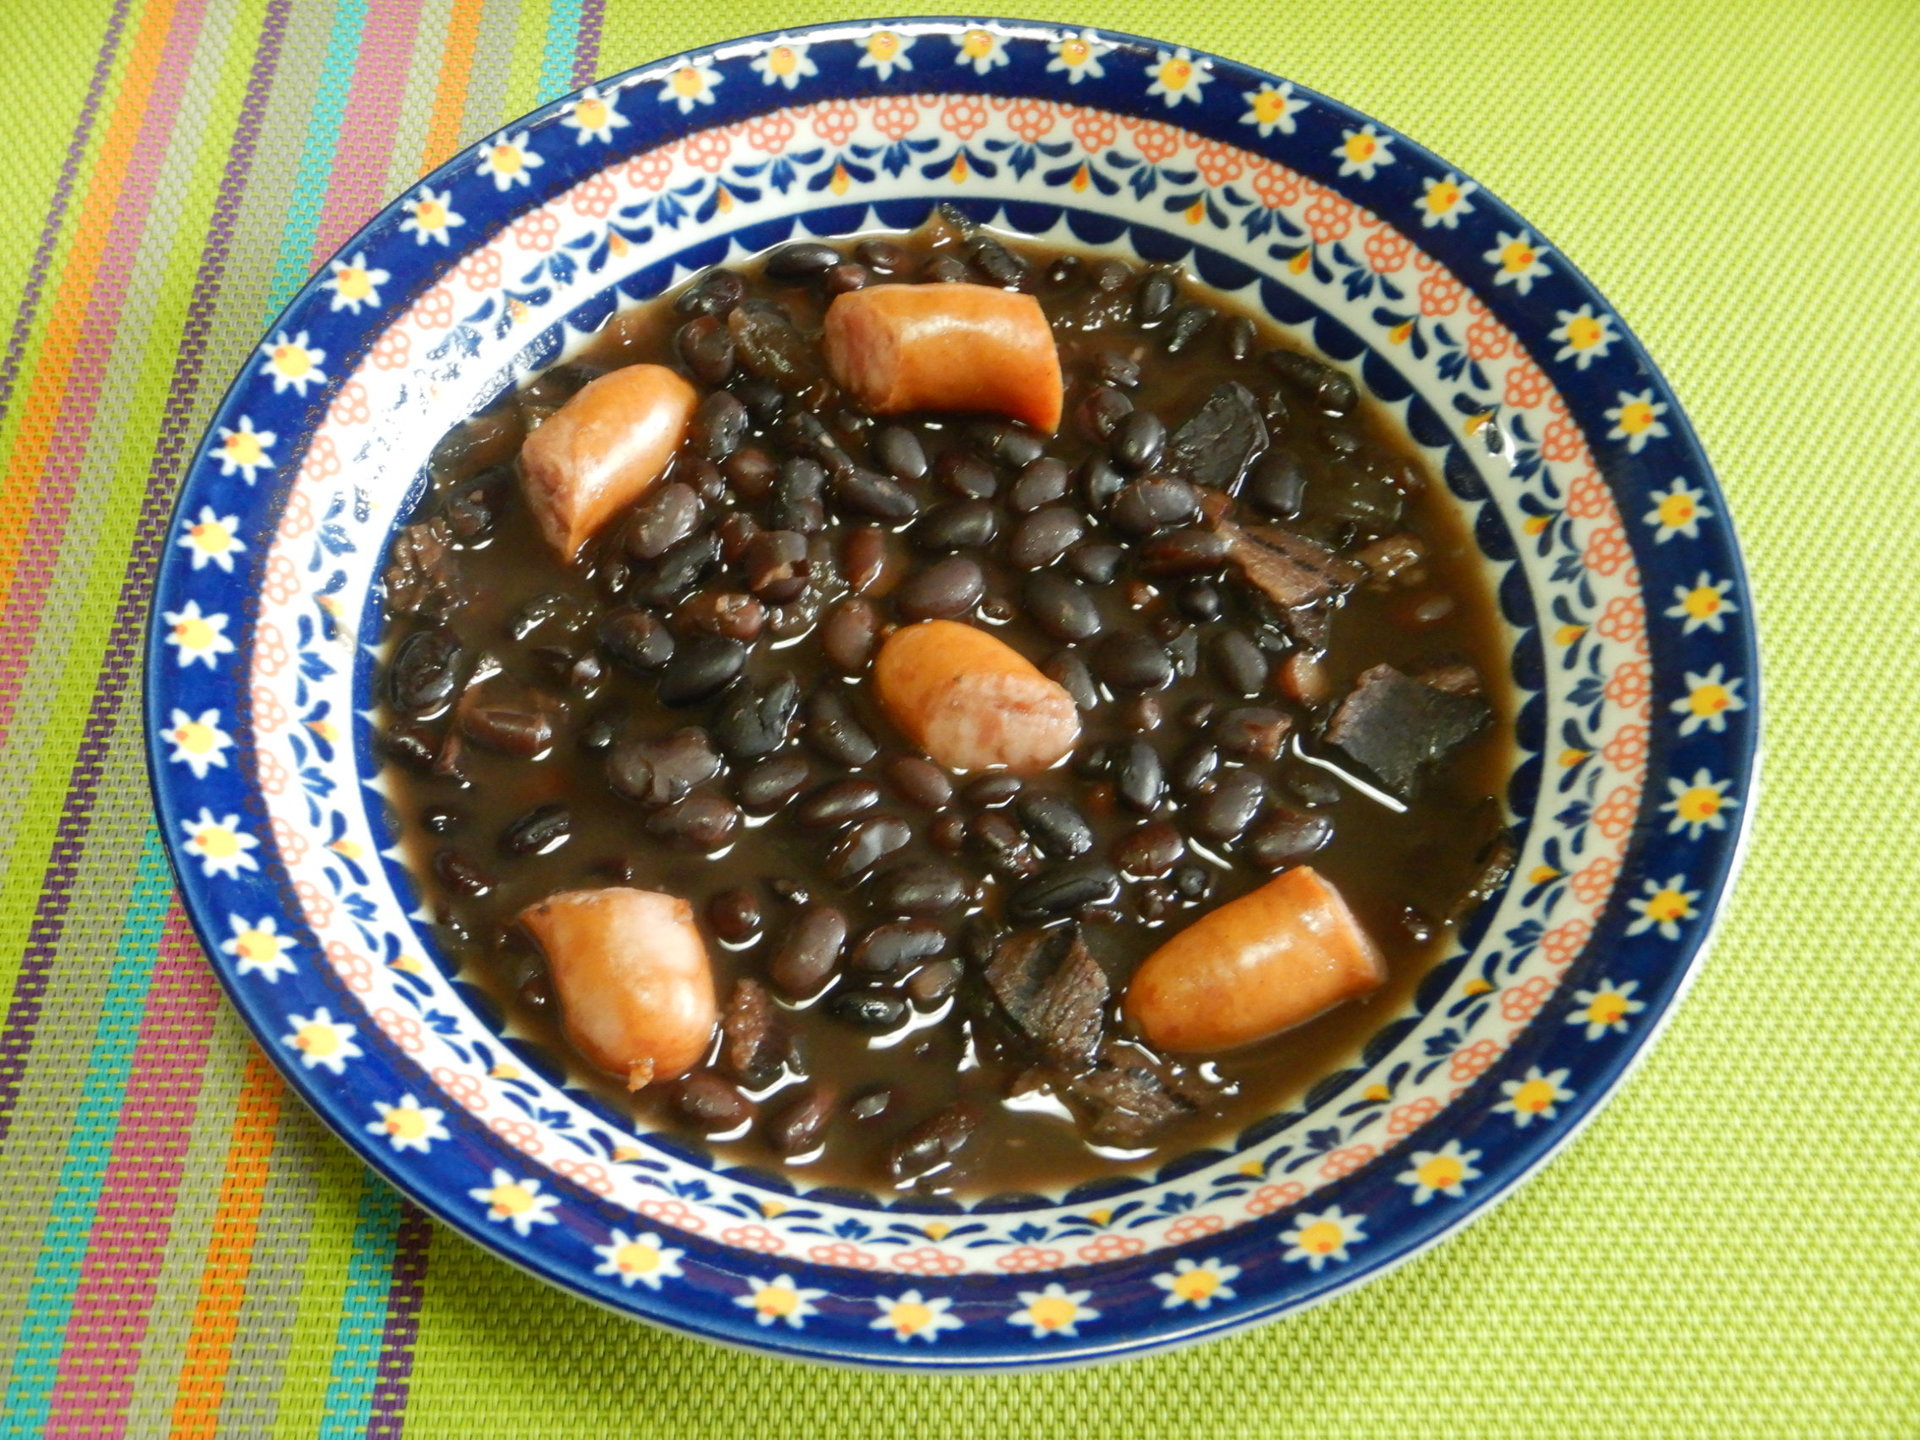 ソーセージと豆の煮込み フェジョアーダ ブラジル 世界の料理ショー とレシピ